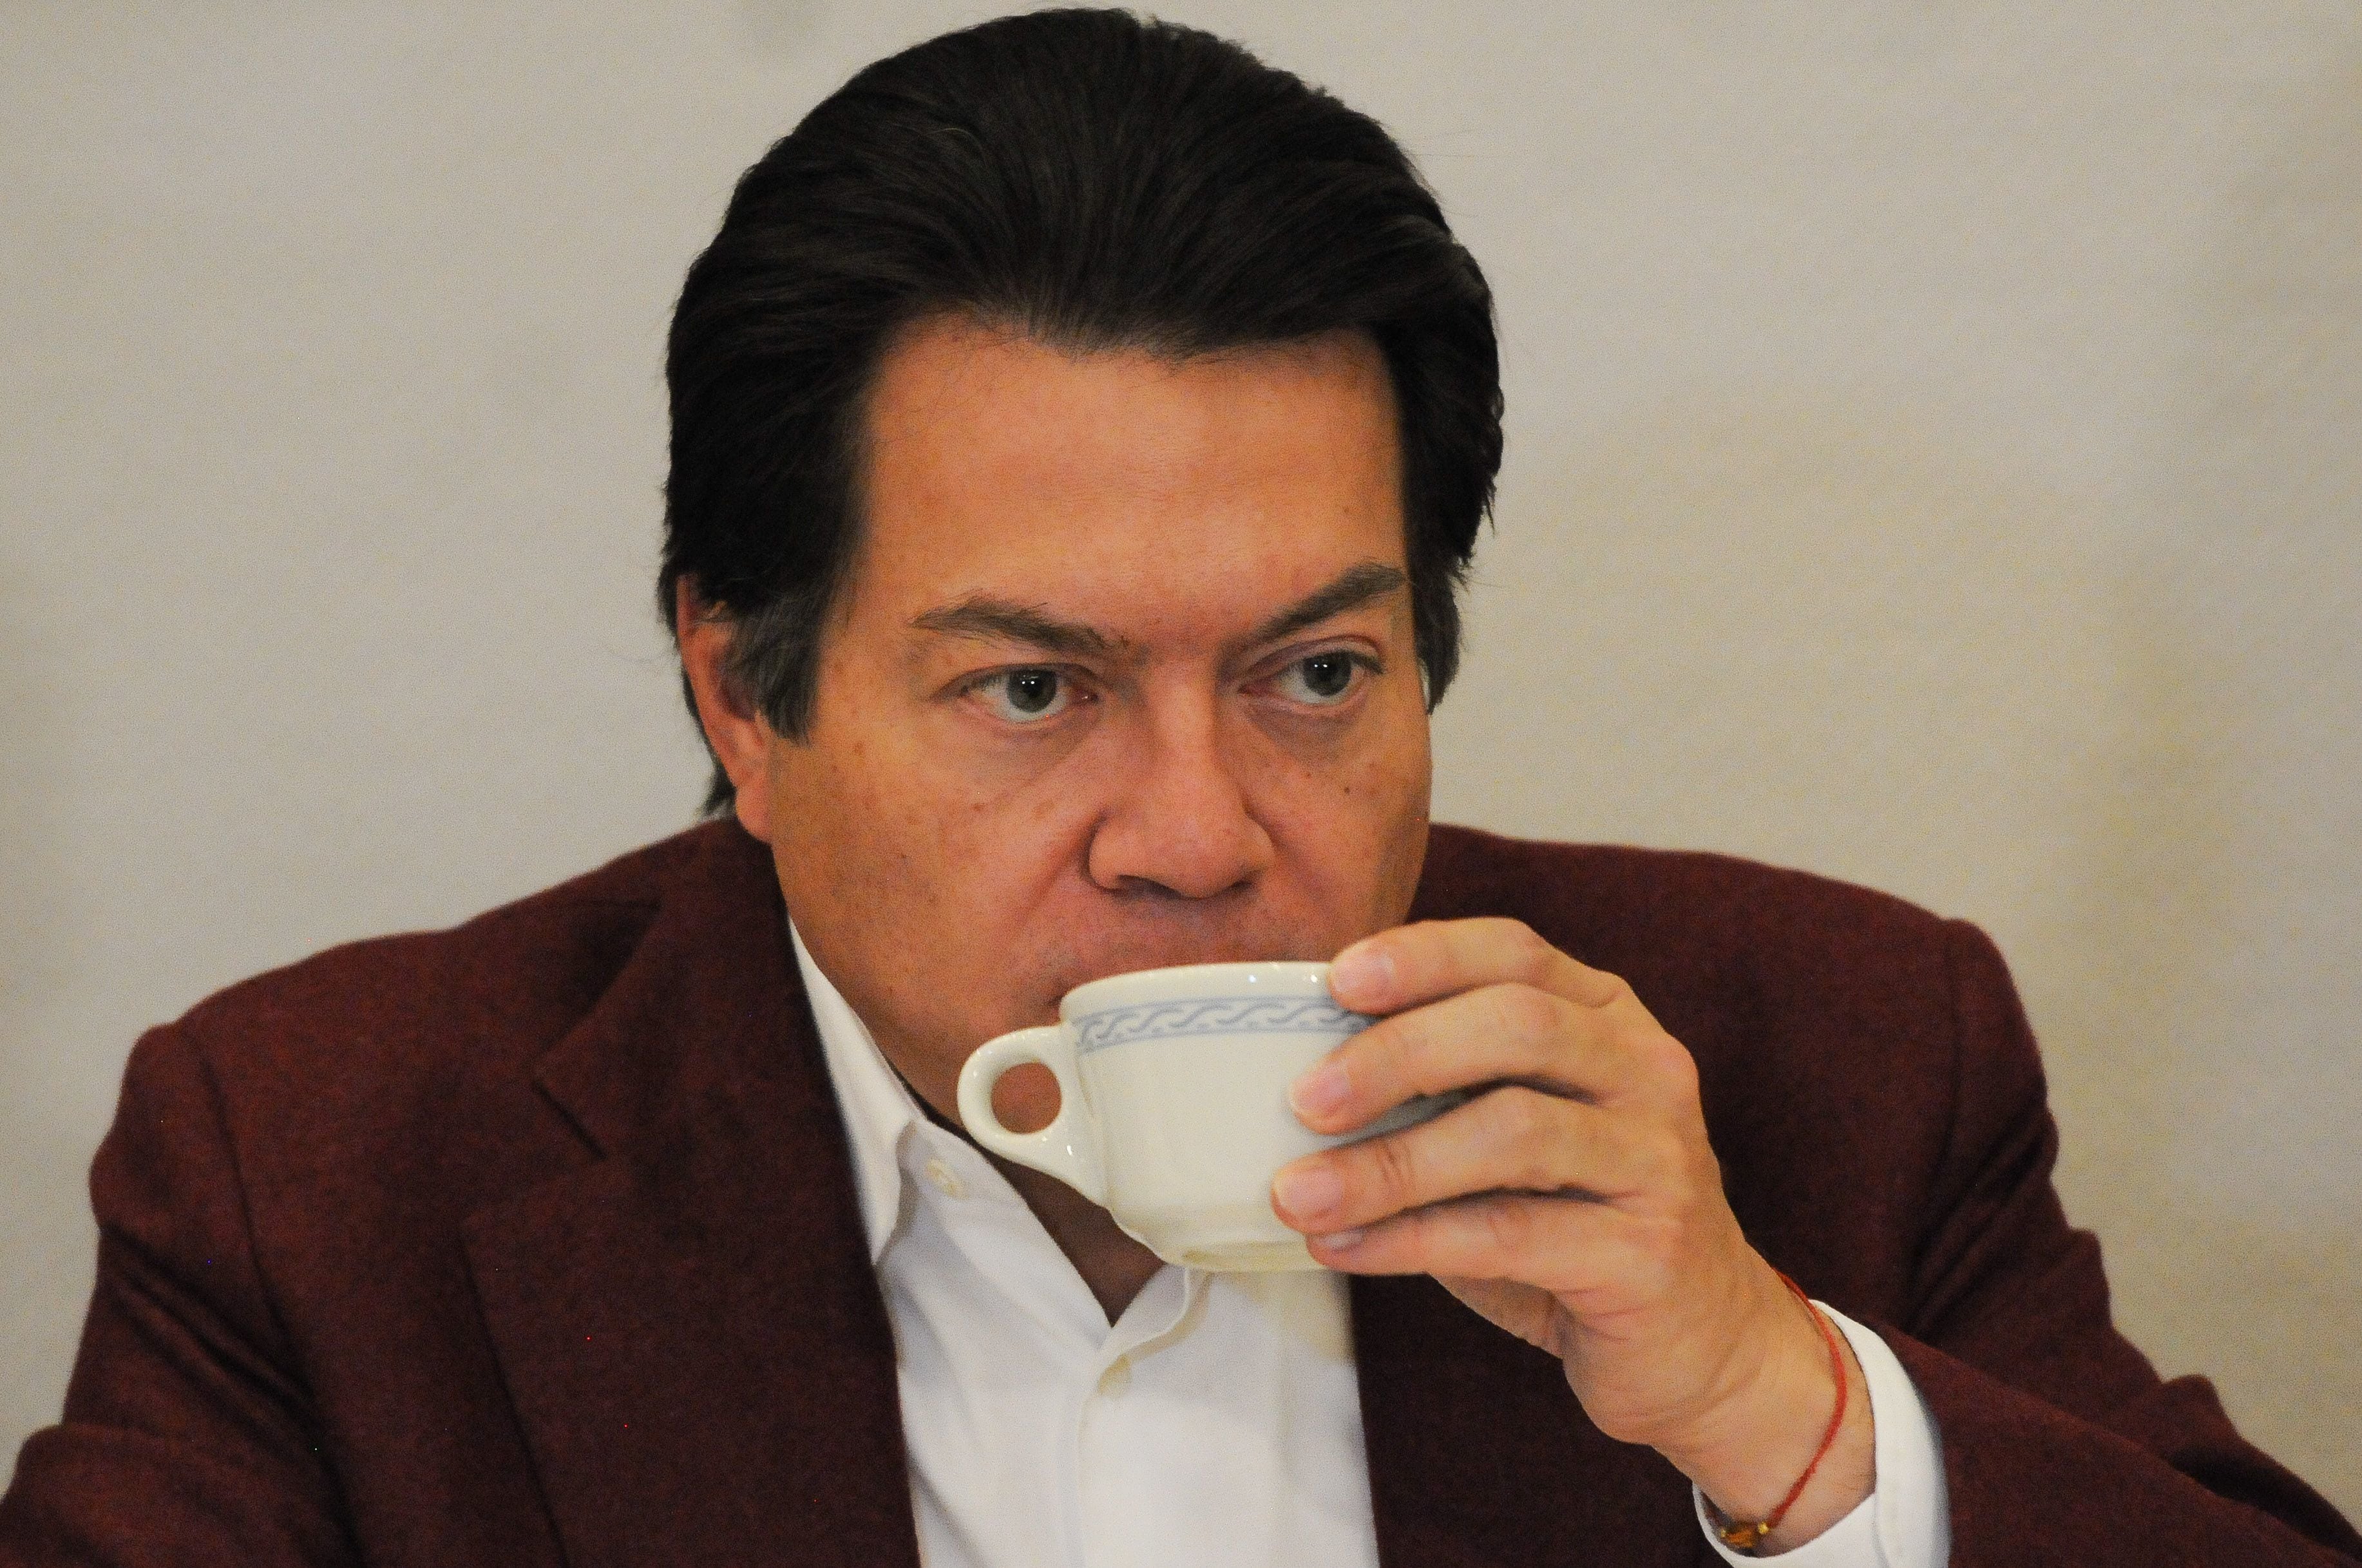 ¿Mario Delgado está ligado con el ‘rey del huachicol’ en Tamaulipas? Esto explicó Xóchitl Gálvez